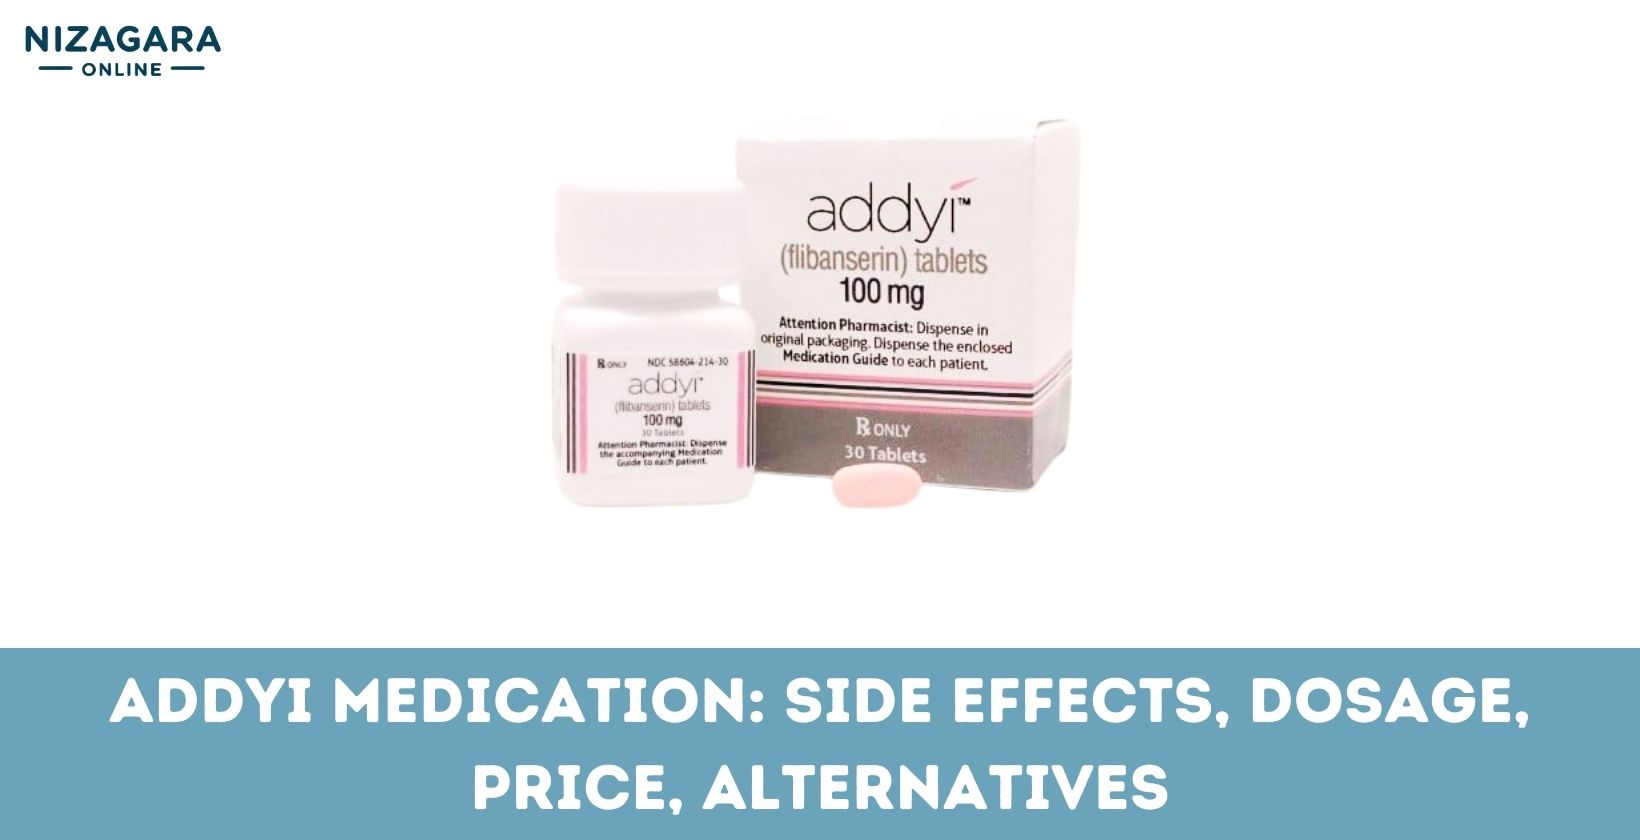 addyi medication